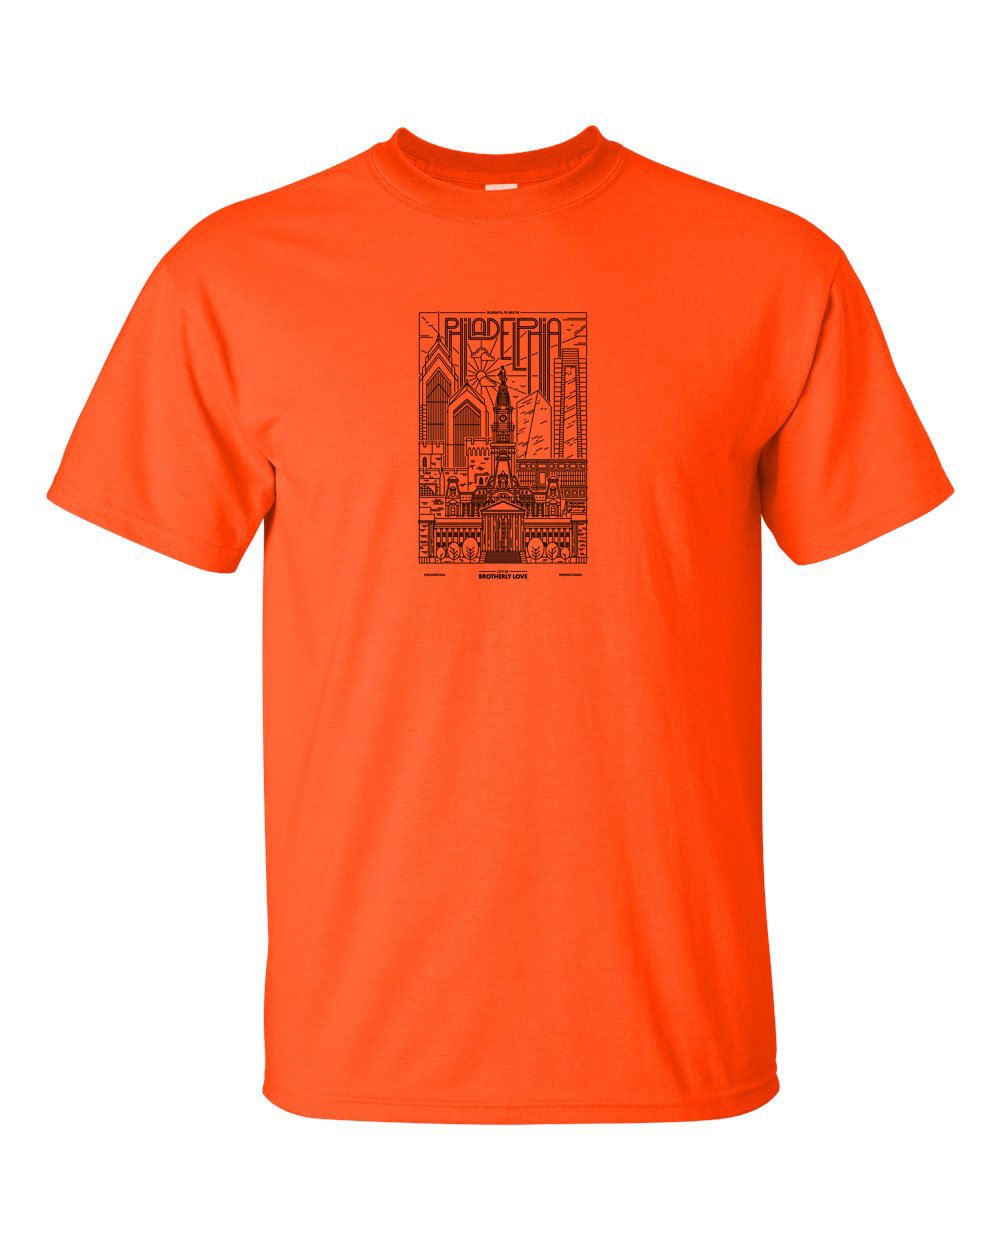 Philadelphia Skyline V2 (Black Ink On Orange) Mens/Unisex T-Shirt